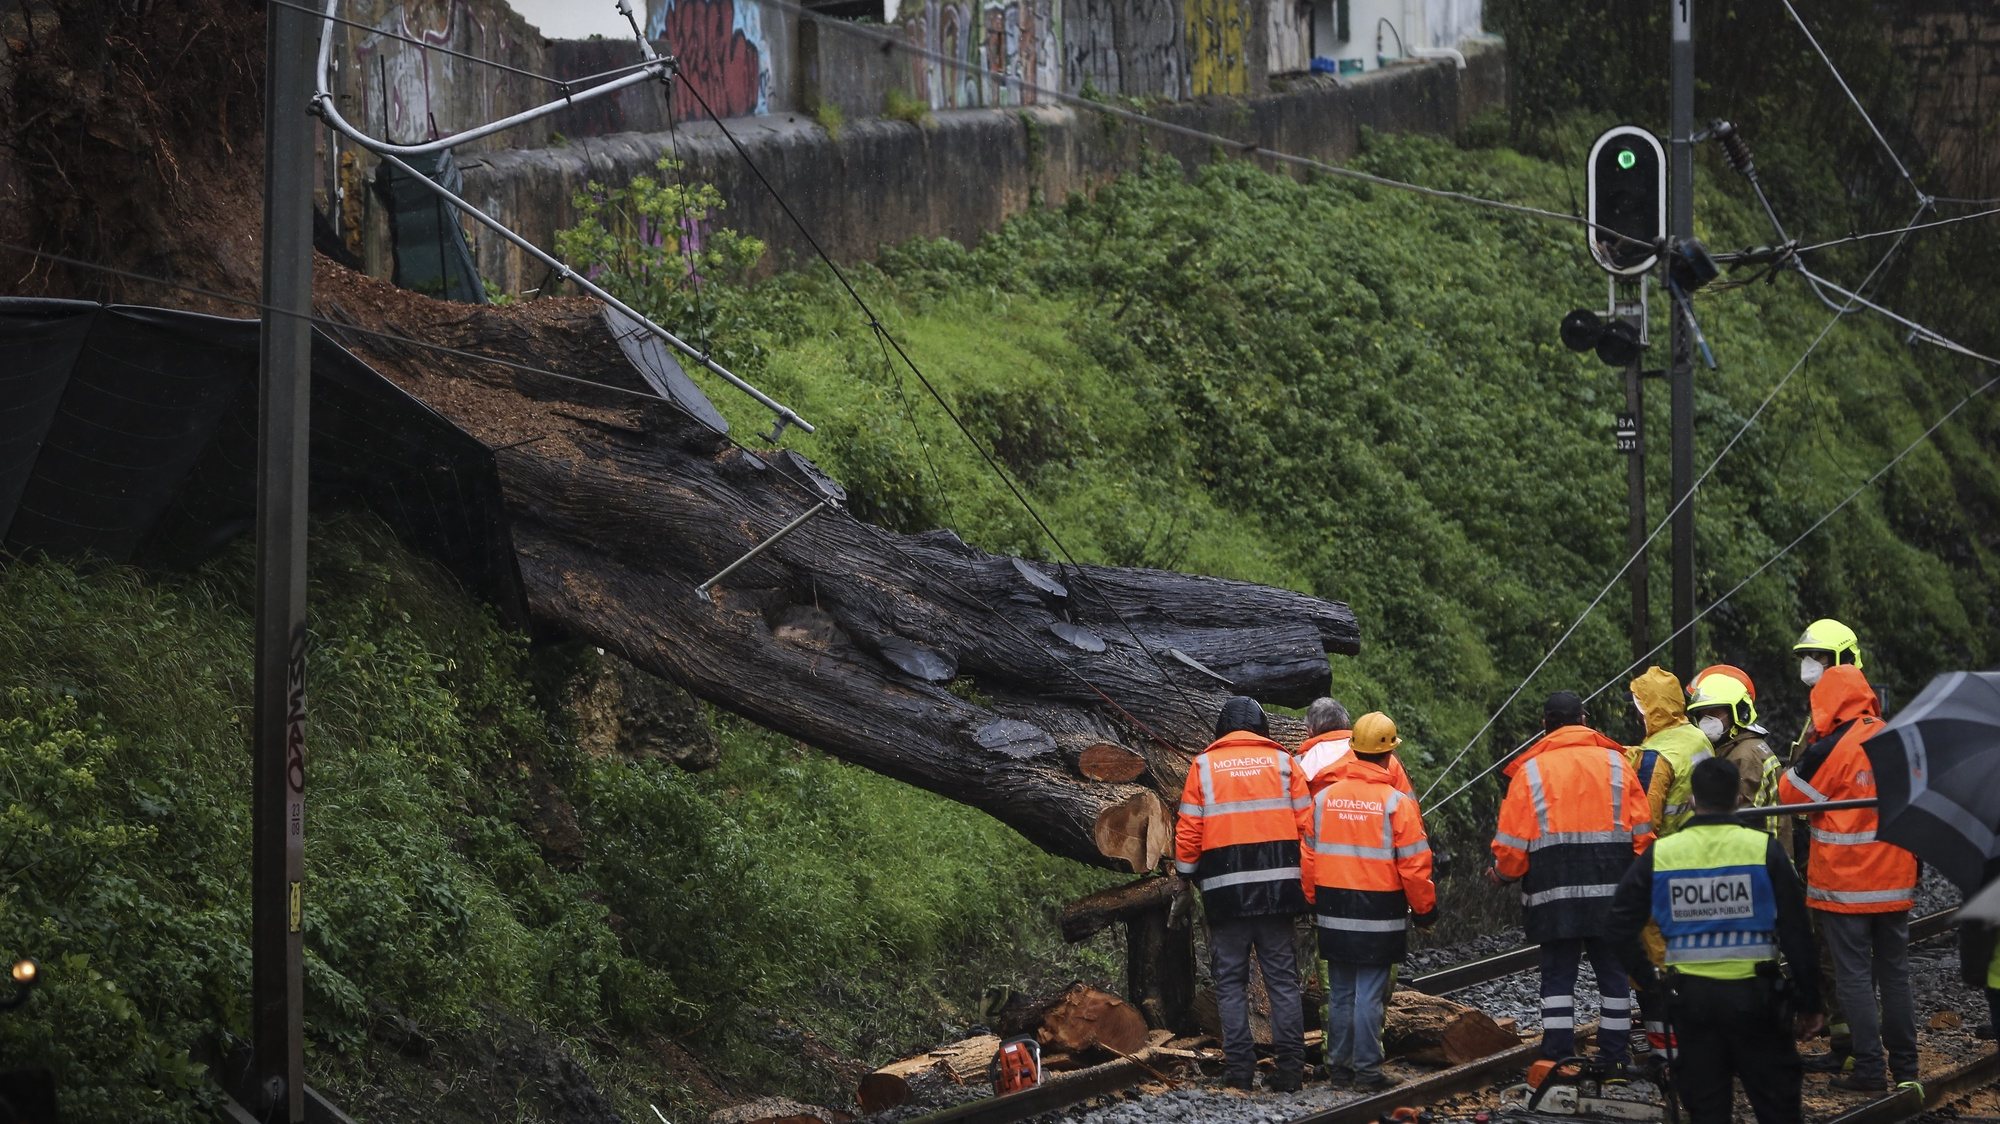 Elementos dos bombeiros retiram uma árvore que caiu na linha de comboio em São João do Estoril devido ao mau tempo, 20 de fevereiro de 2021. RODRIGO ANTUNES/LUSA